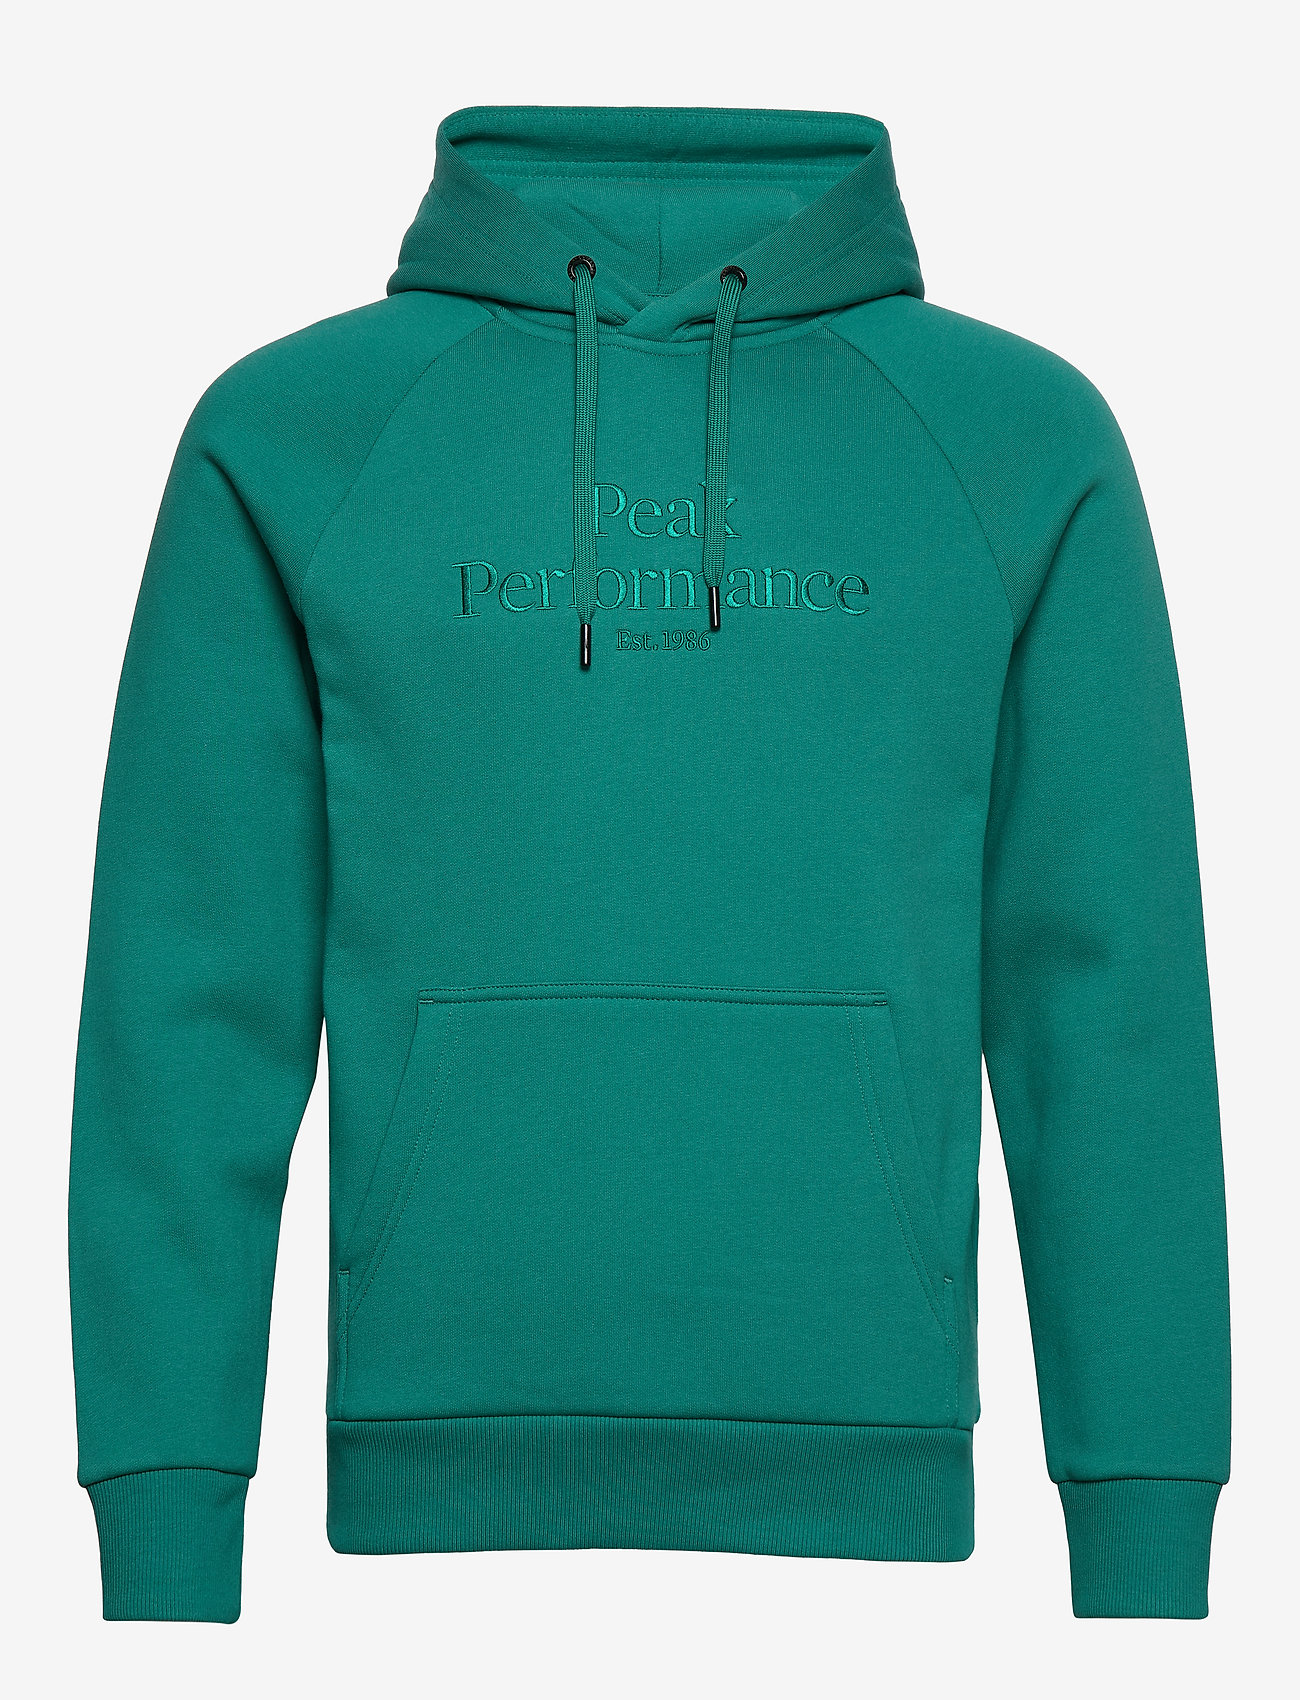 peak performance green hoodie